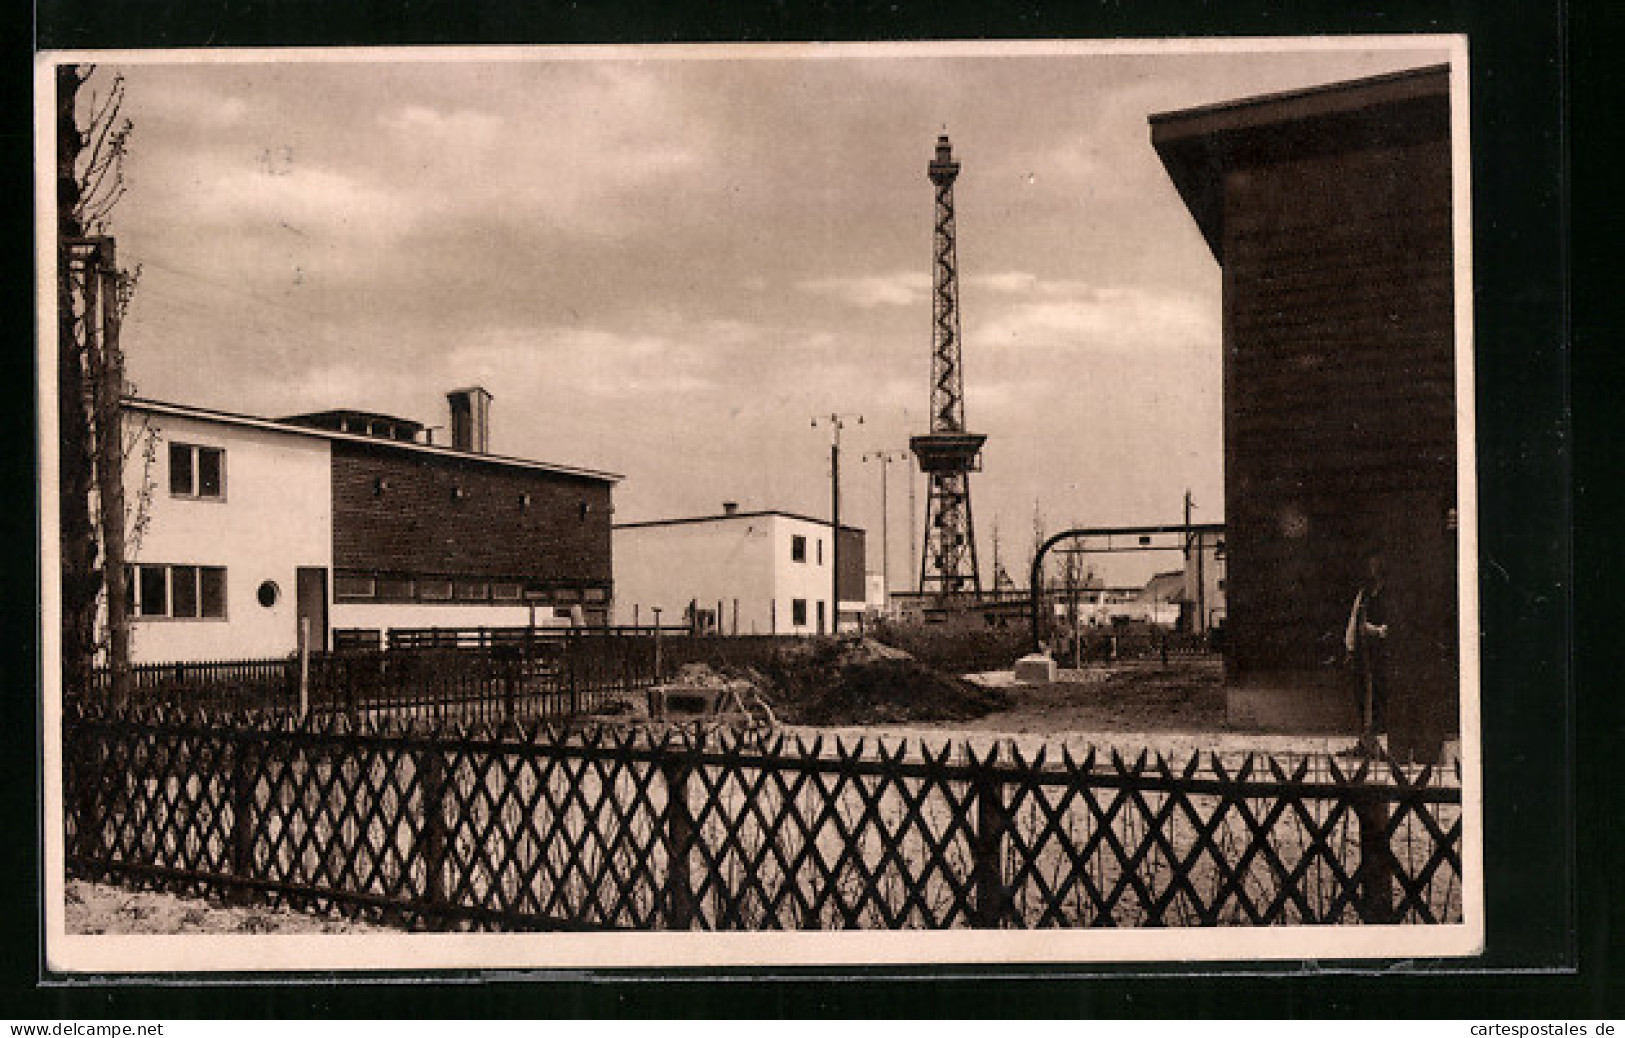 AK Berlin, Deutsche Bauausstellung 1931, Das Dorf Am Funkturm, Der Ländliche Siedlungsbau  - Expositions